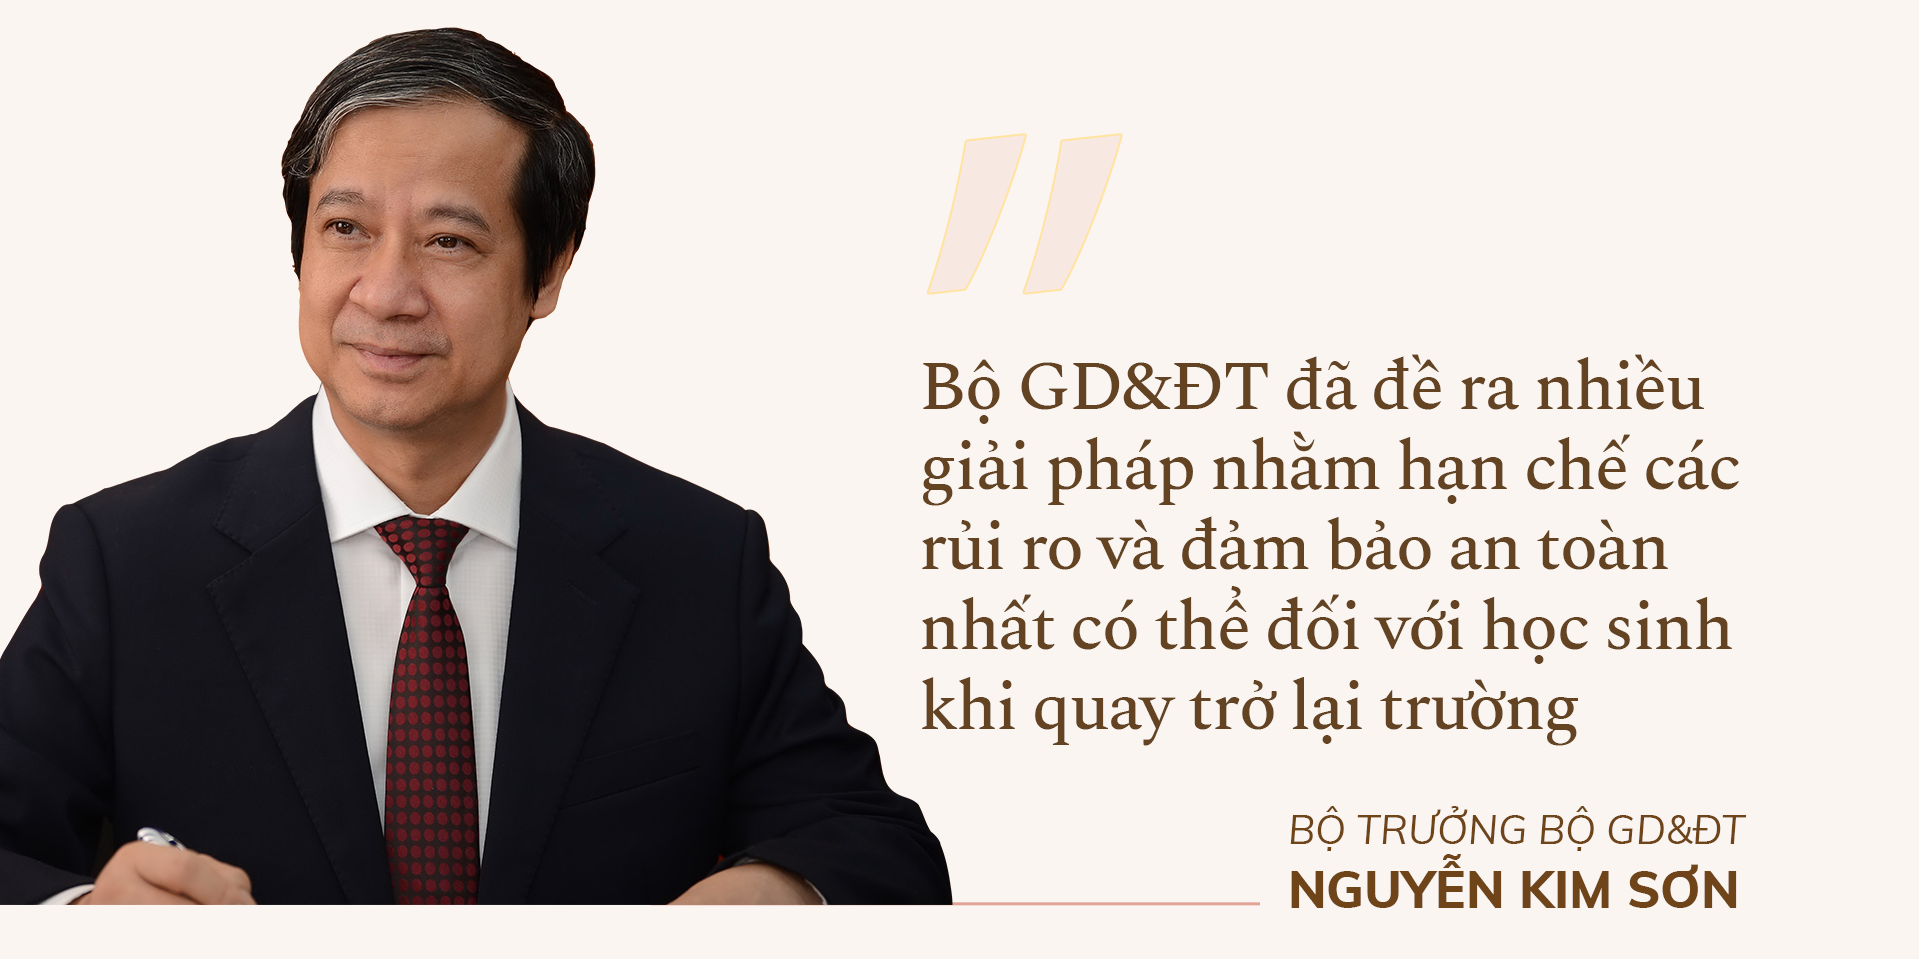 Bộ trưởng Bộ GD&ĐT Nguyễn Kim Sơn: Bù đắp kiến thức, tái thiết giáo dục - ảnh 5